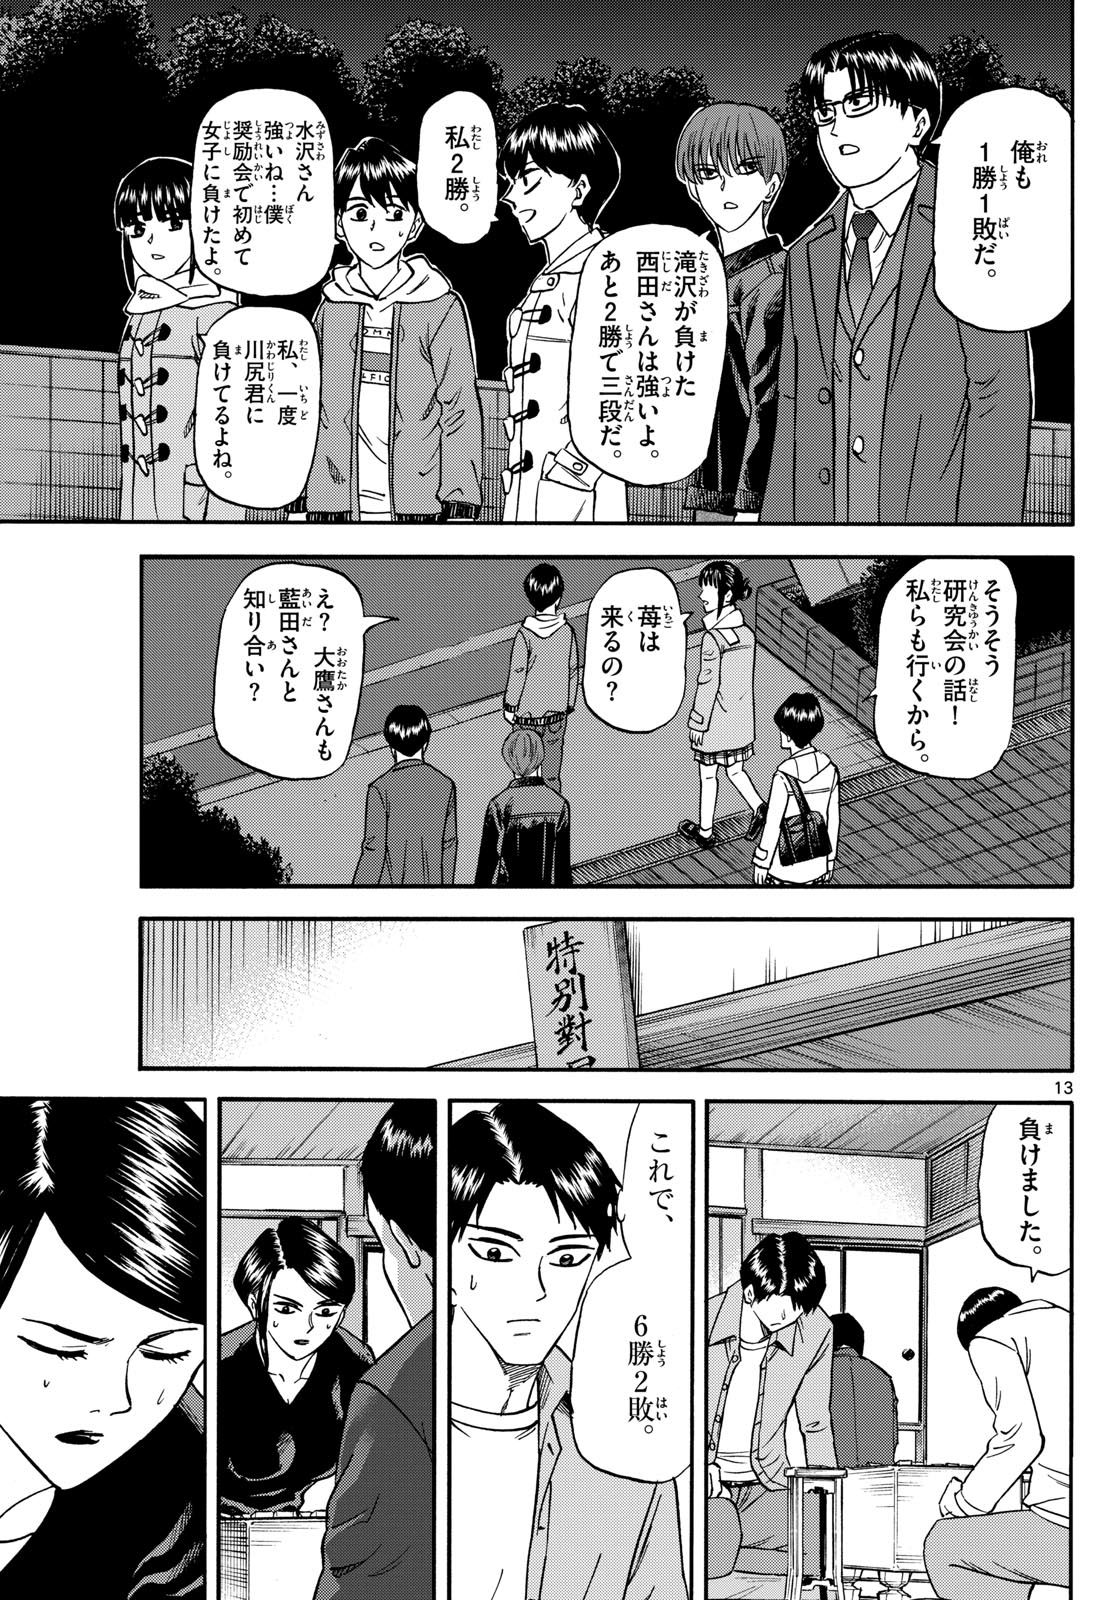 Tatsu to Ichigo - Chapter 172 - Page 13